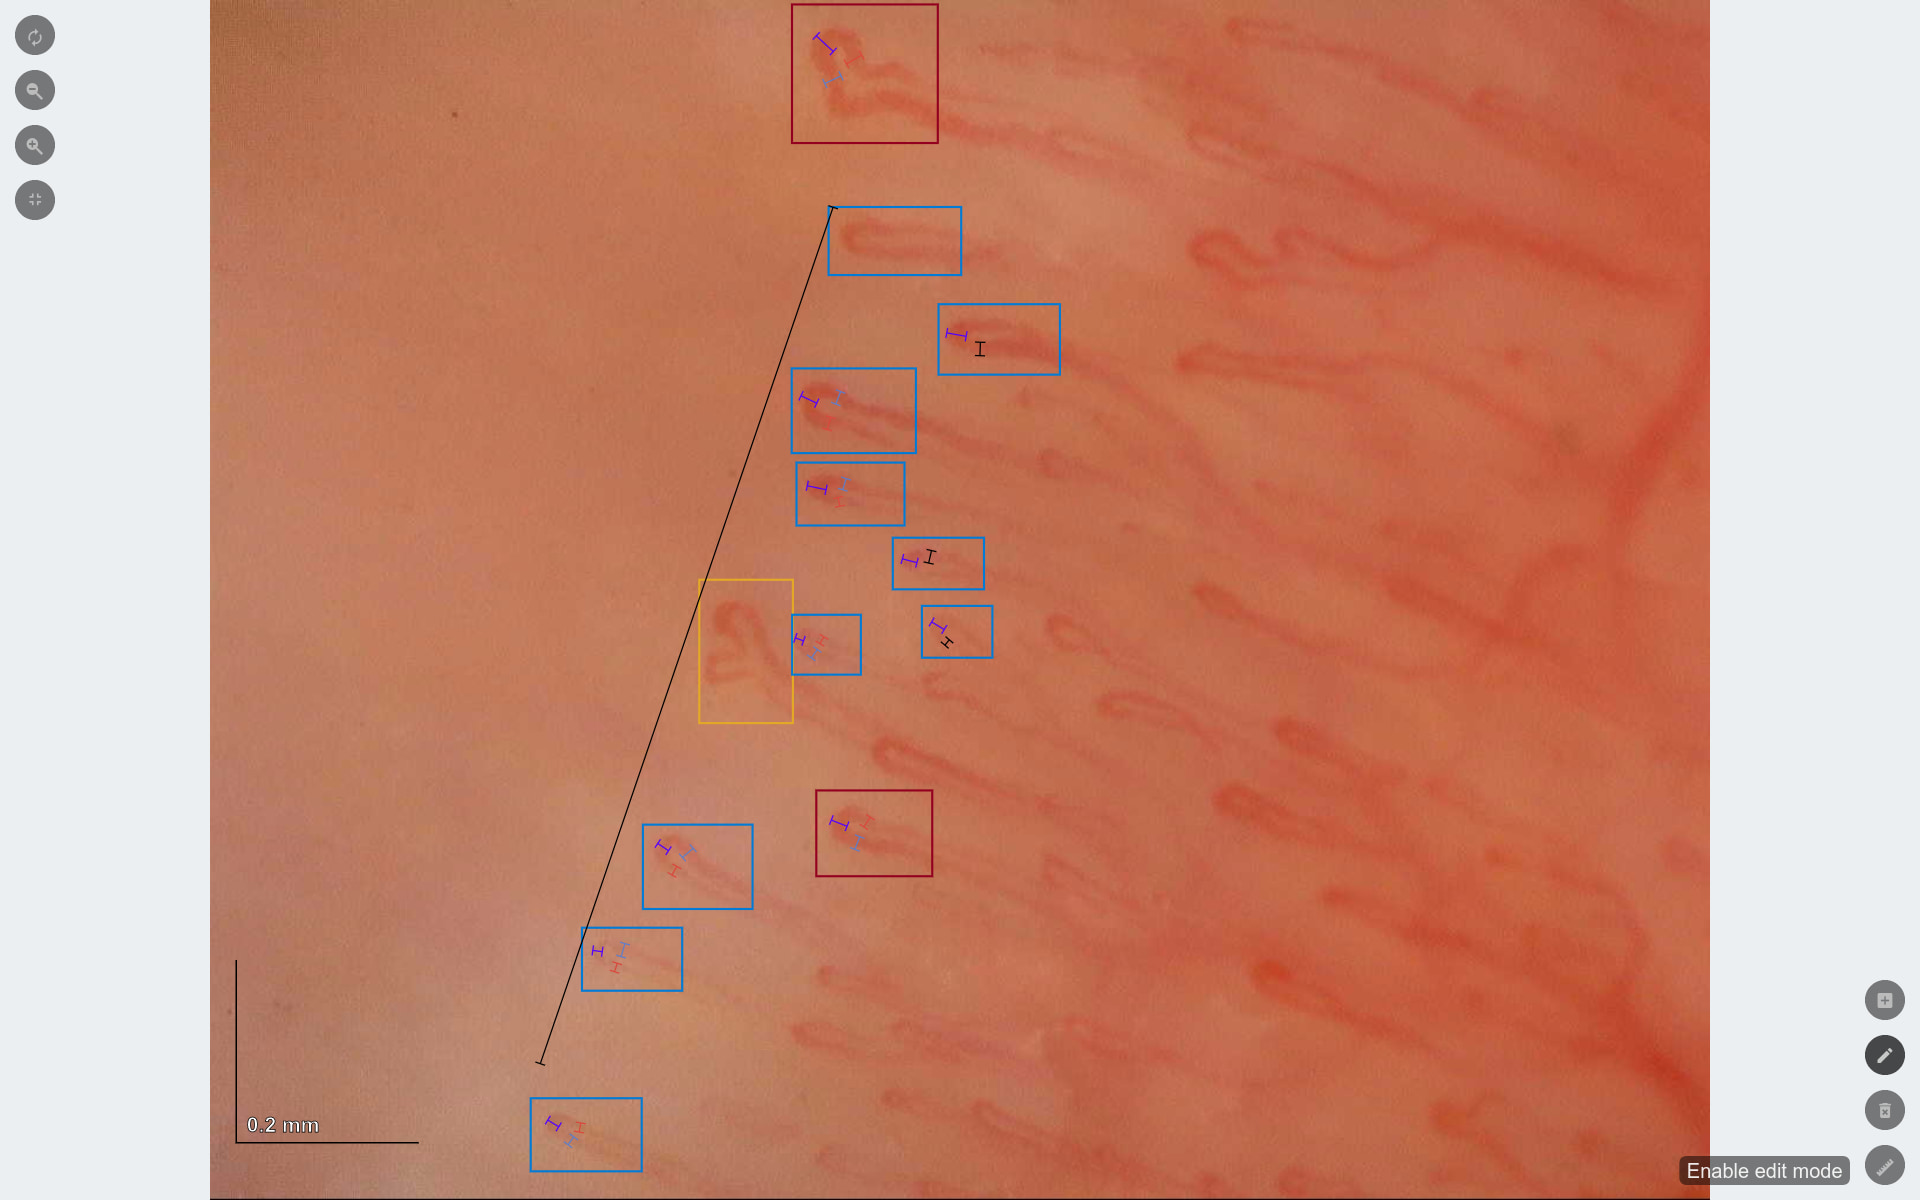 Capillary.io automatizza il rilevamento, la misurazione e la classificazione dei capillari in tutte le tue immagini, ma puoi facilmente visualizzare e modificare i capillari che ha rilevato per te.